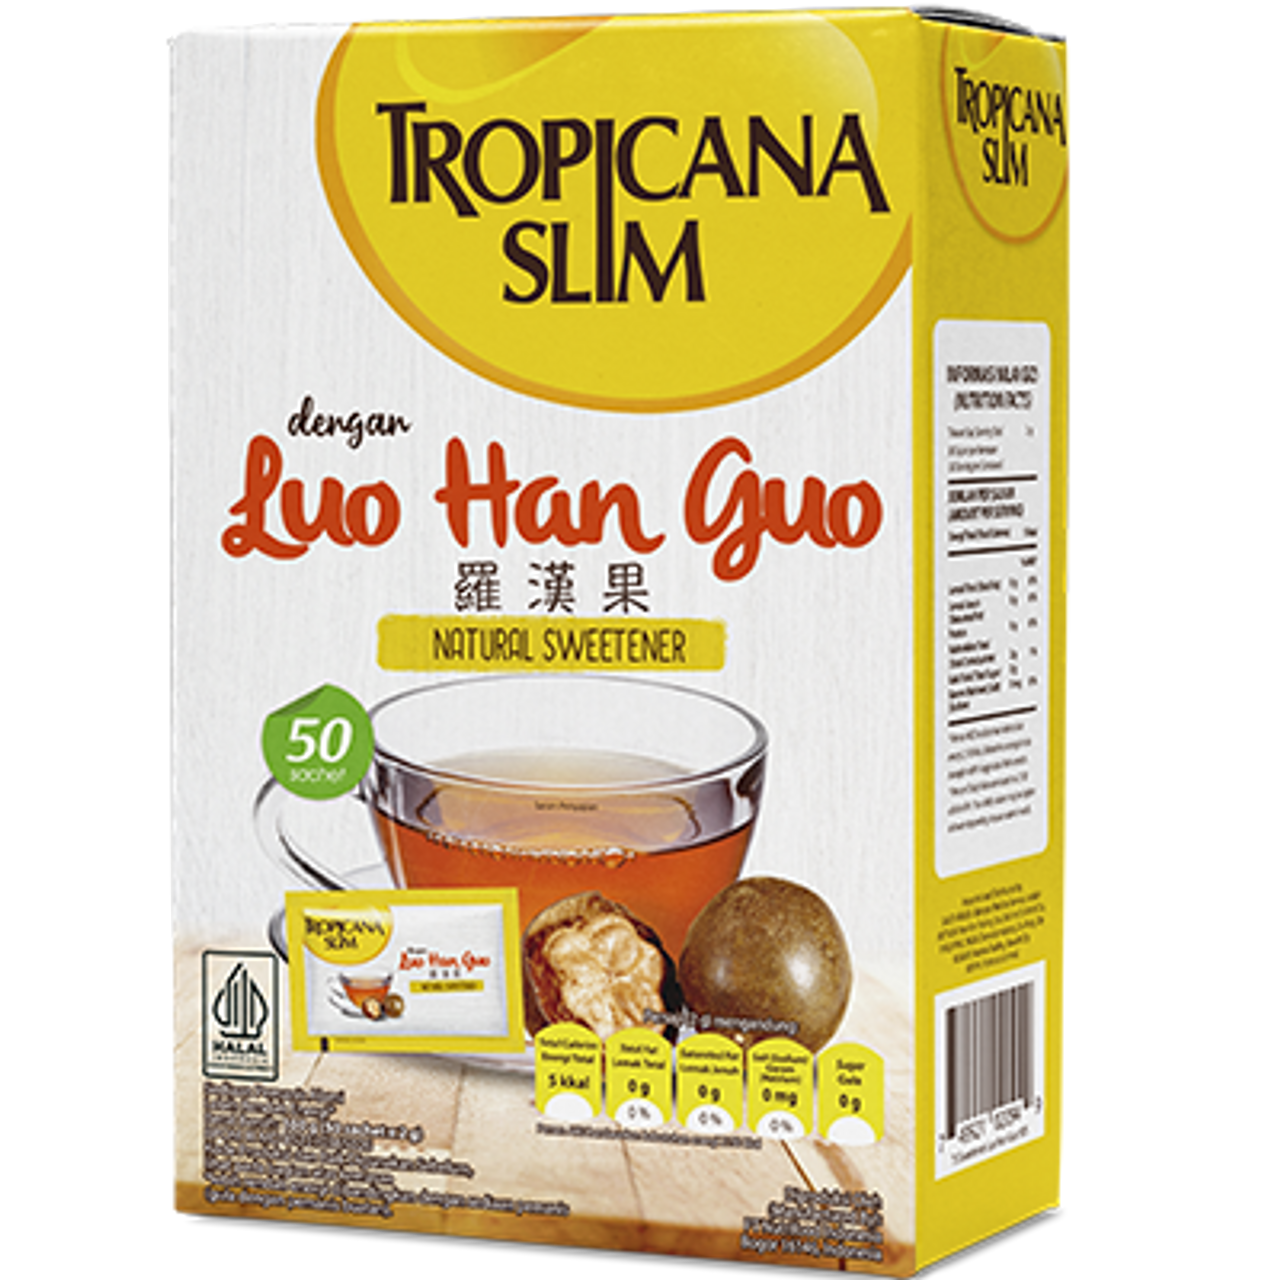 Tropicana Slim Luo Han Guo, 100 grams